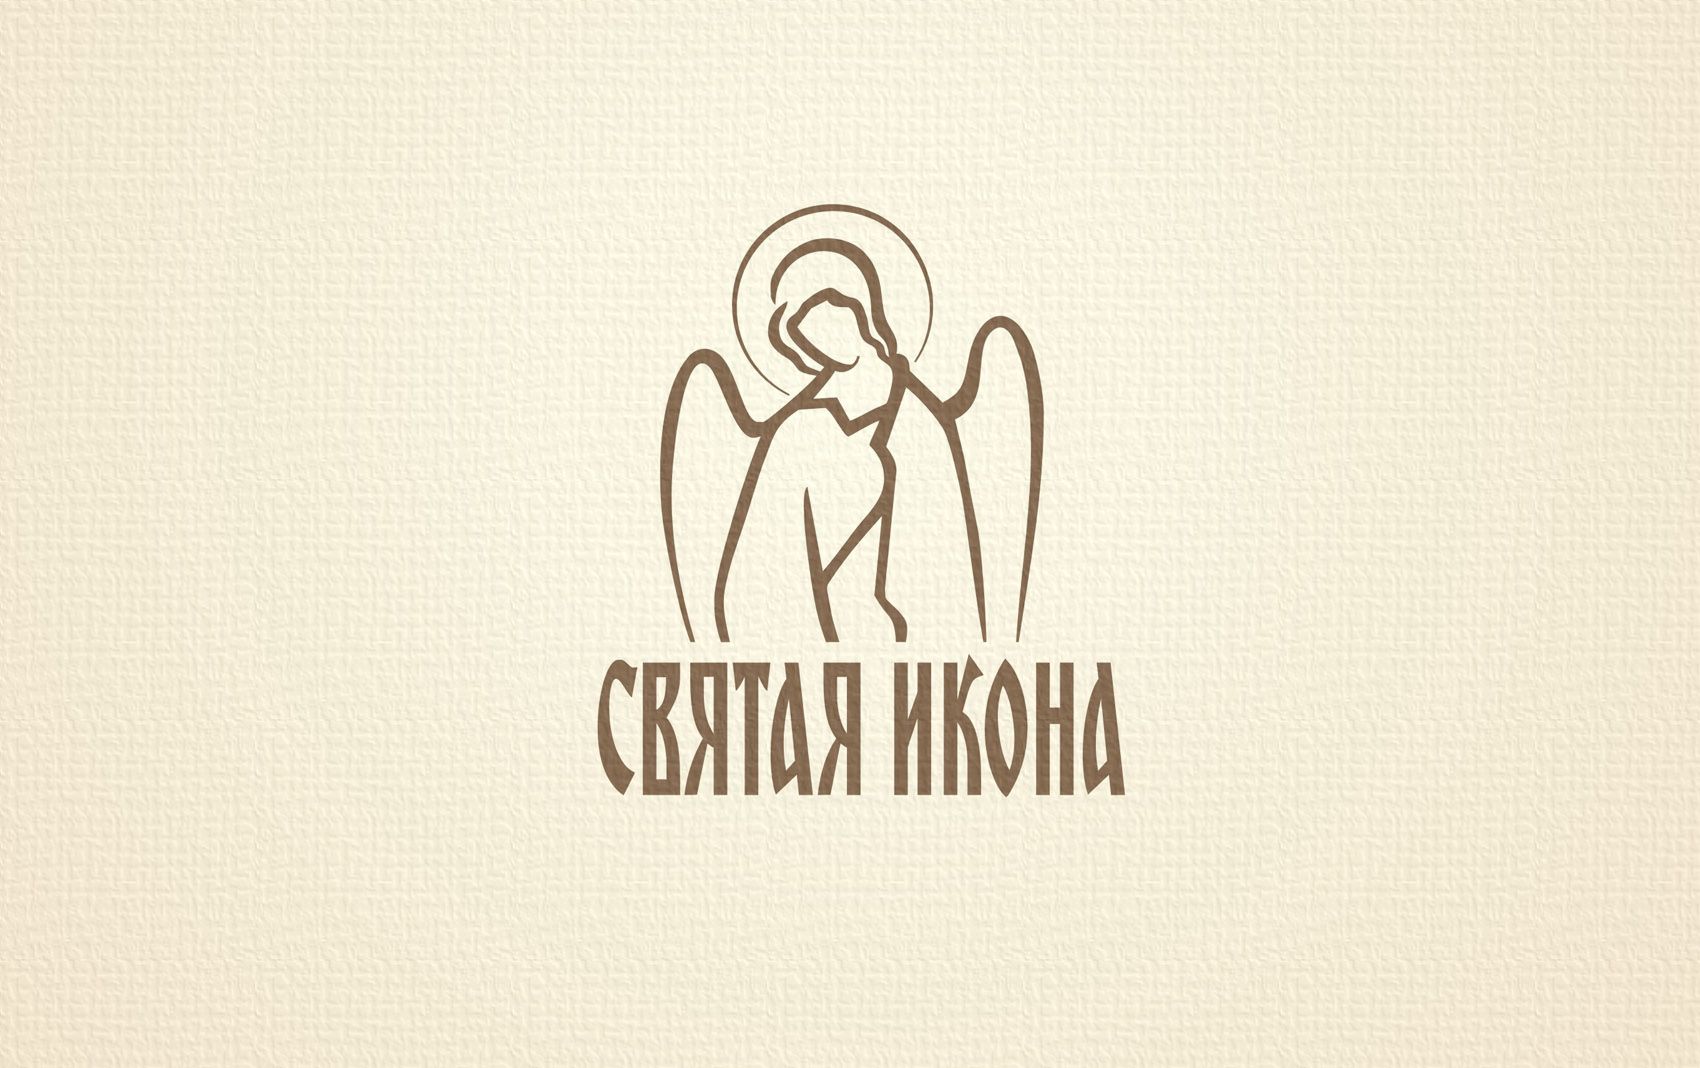 Логотип для Святая икона - дизайнер Zheravin